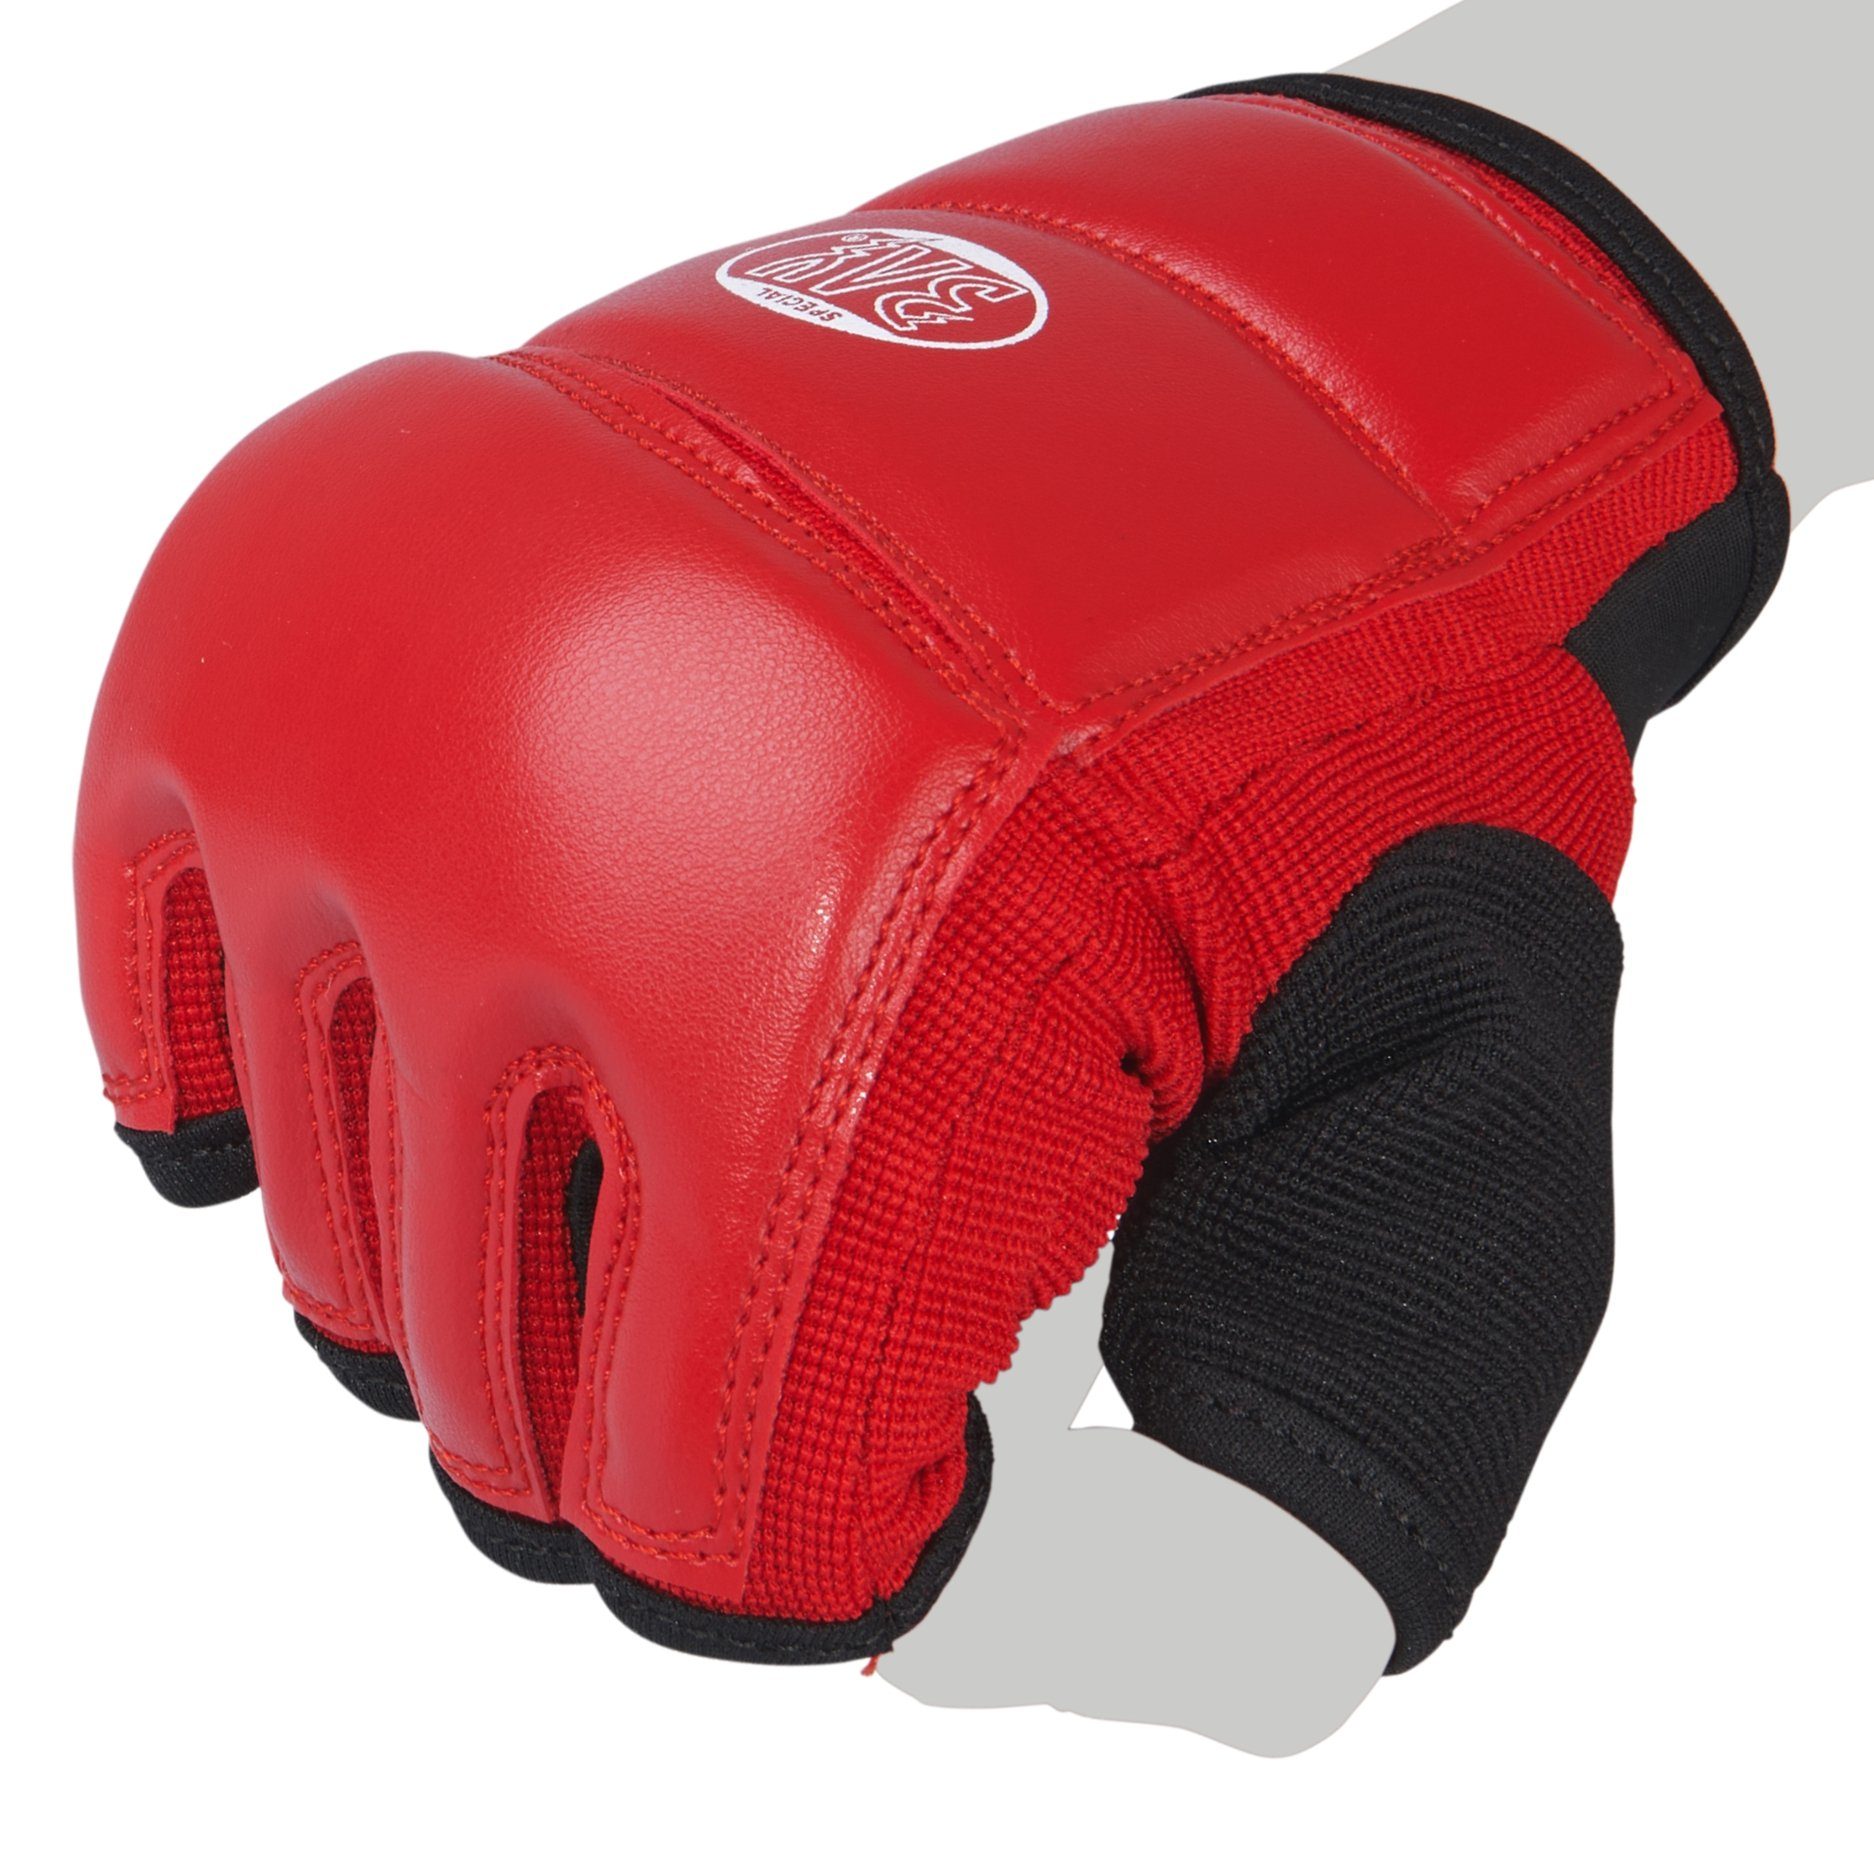 Kinder Sandsackhandschuhe - Sandsack Touch und rot, BAY-Sports Boxsack XS Boxhandschuhe Erwachsene Handschutz XXL